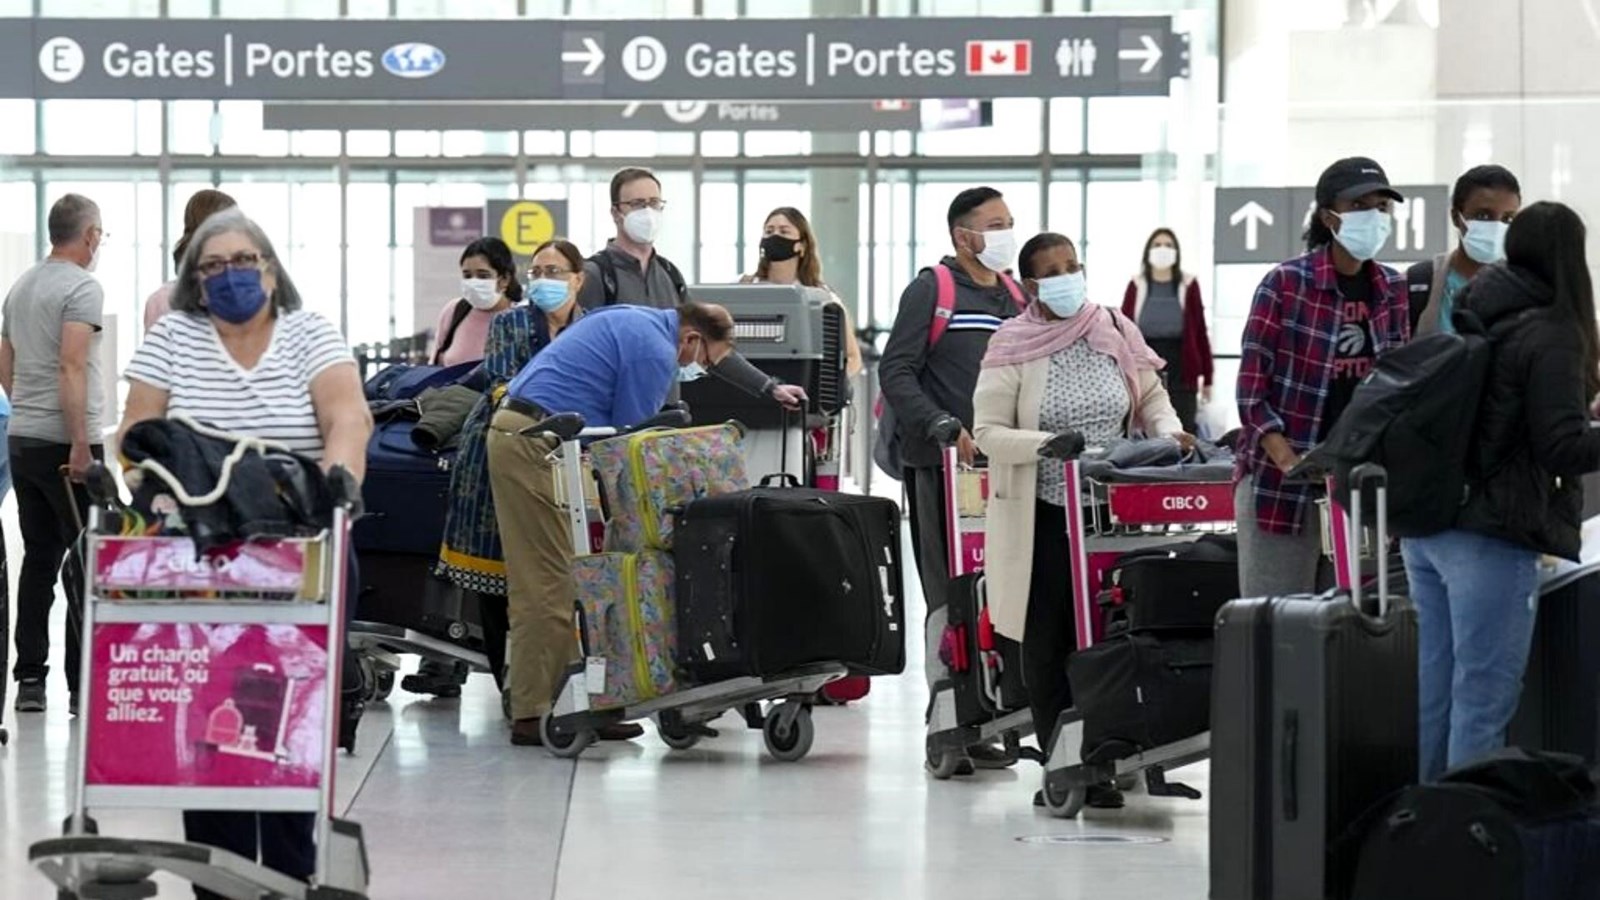 La reprise des voyages et les mesures sanitaires ne font pas bon ménage aux aéroports